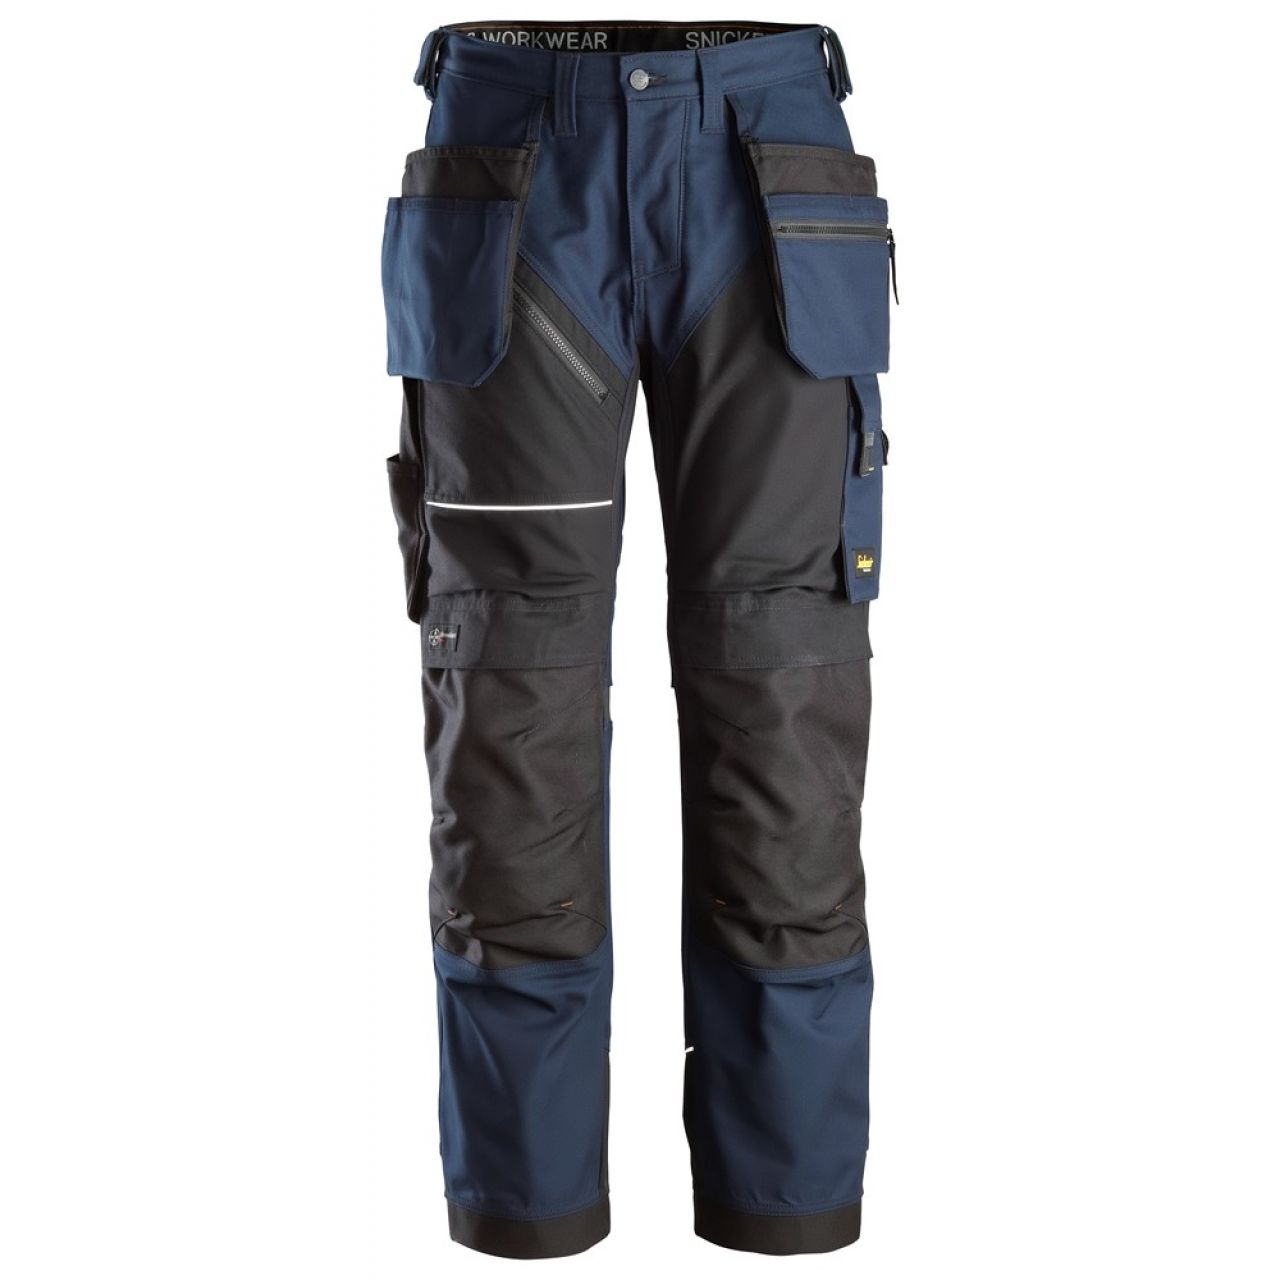 6214 Pantalones largos de trabajo con bolsillos flotantes Canvas+ RuffWork azul marino-negro talla 50